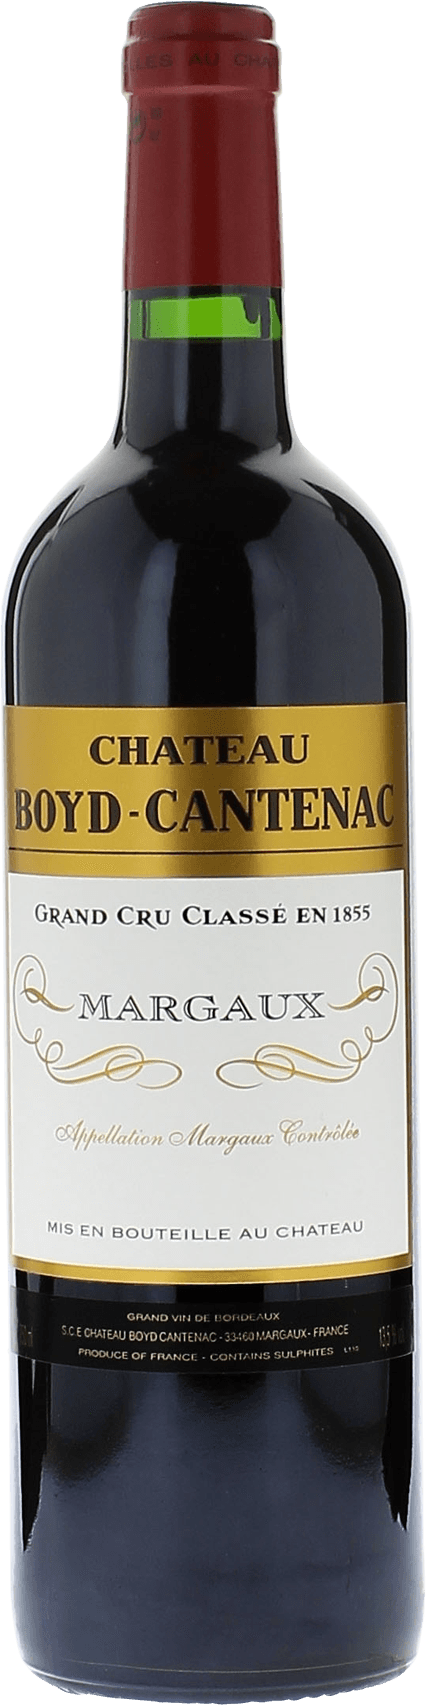 Boyd cantenac 1989 2me Grand cru class Margaux, Bordeaux rouge